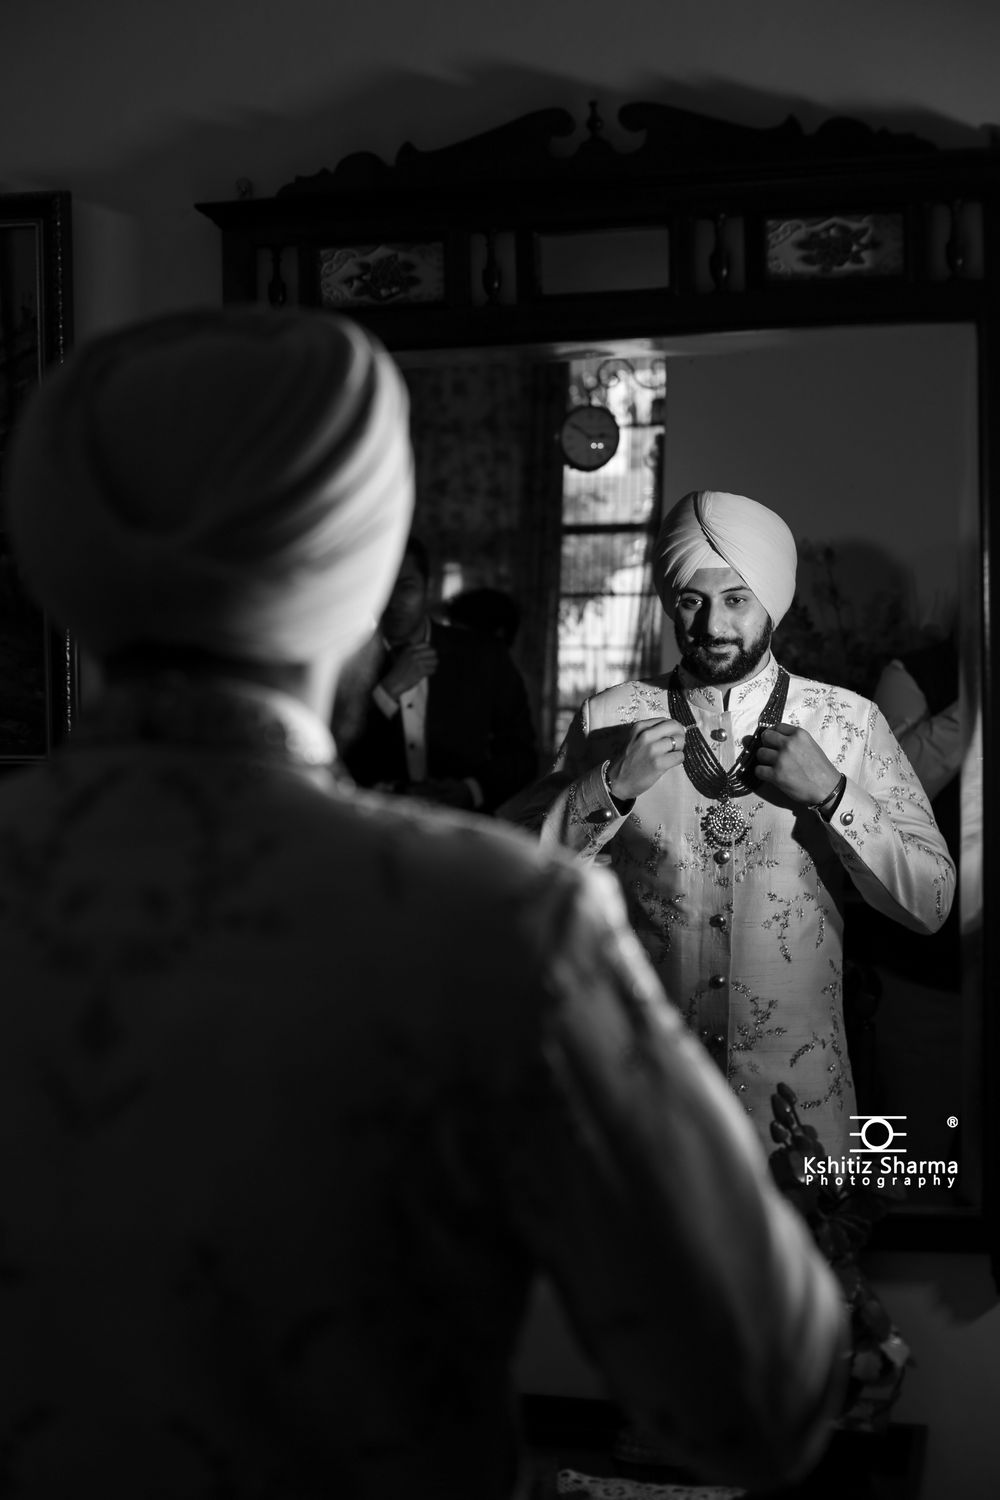 Photo From Wedding: Meher & Tejbir - By Kshitiz Sharma Photography